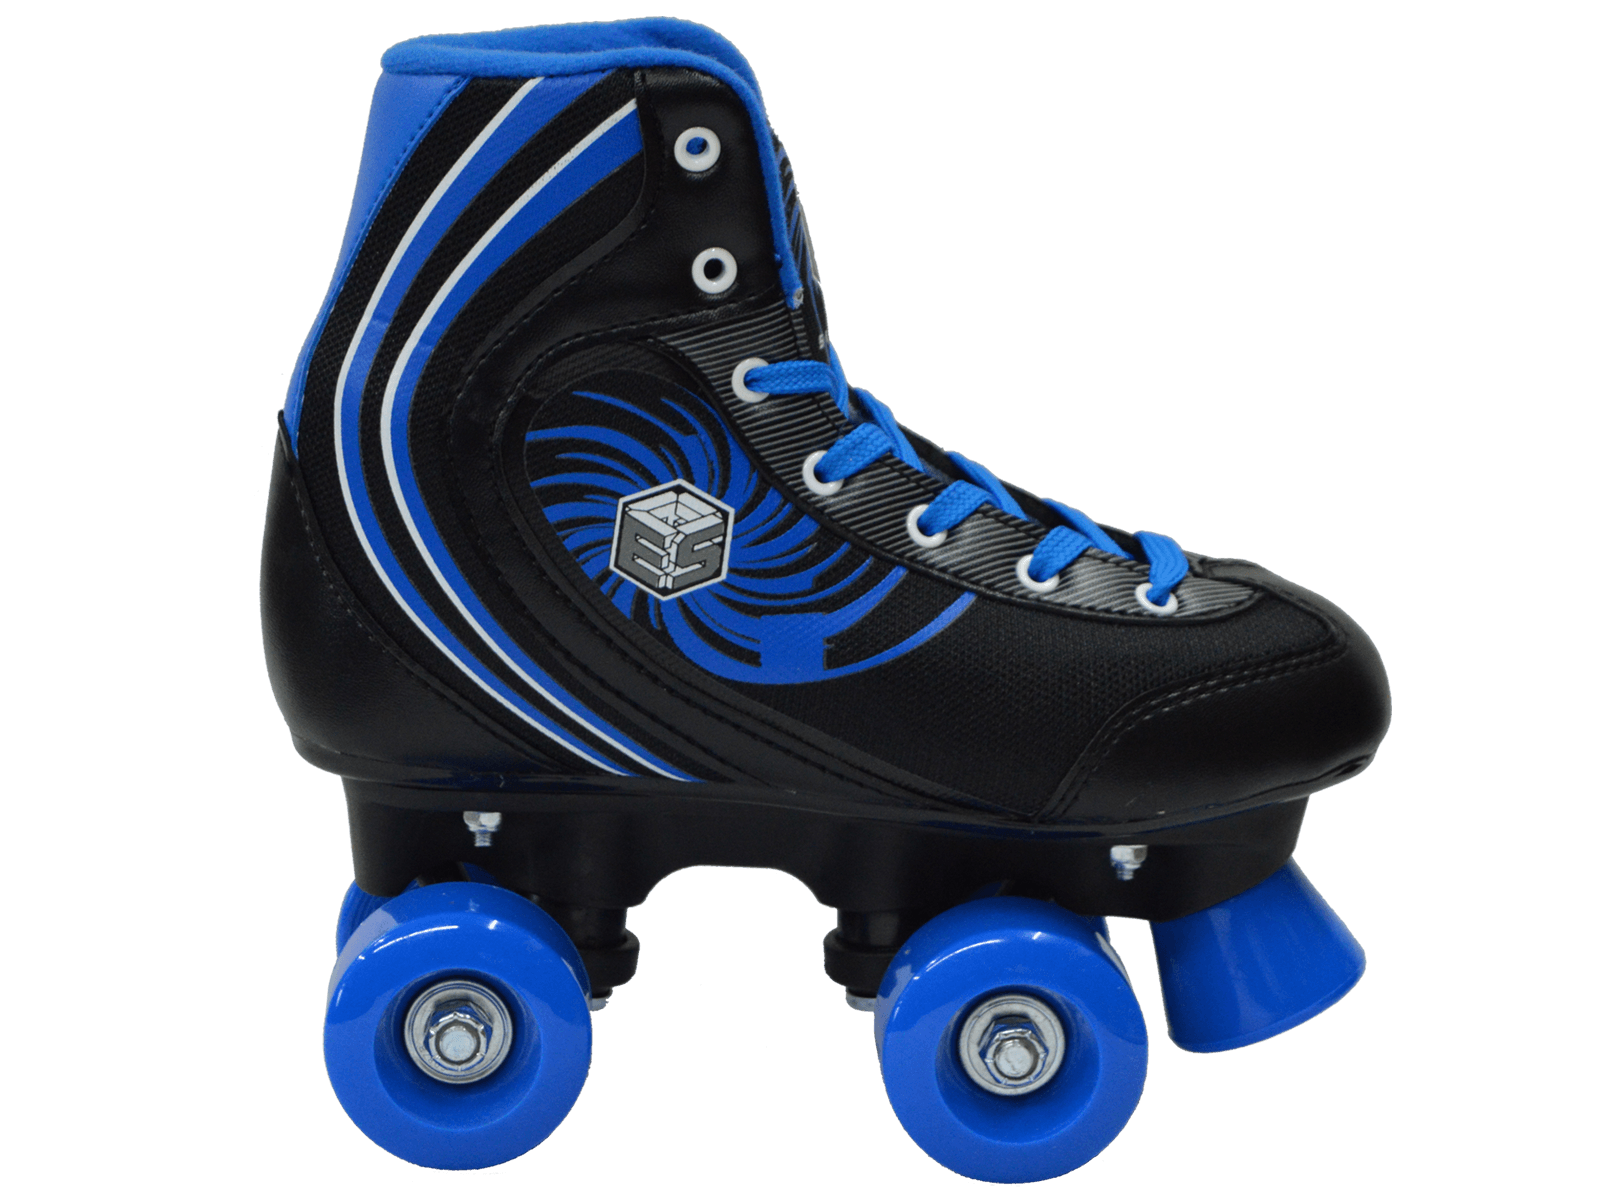 Epic Rock Candy Kids Quad Roller Skates - image 3 of 7